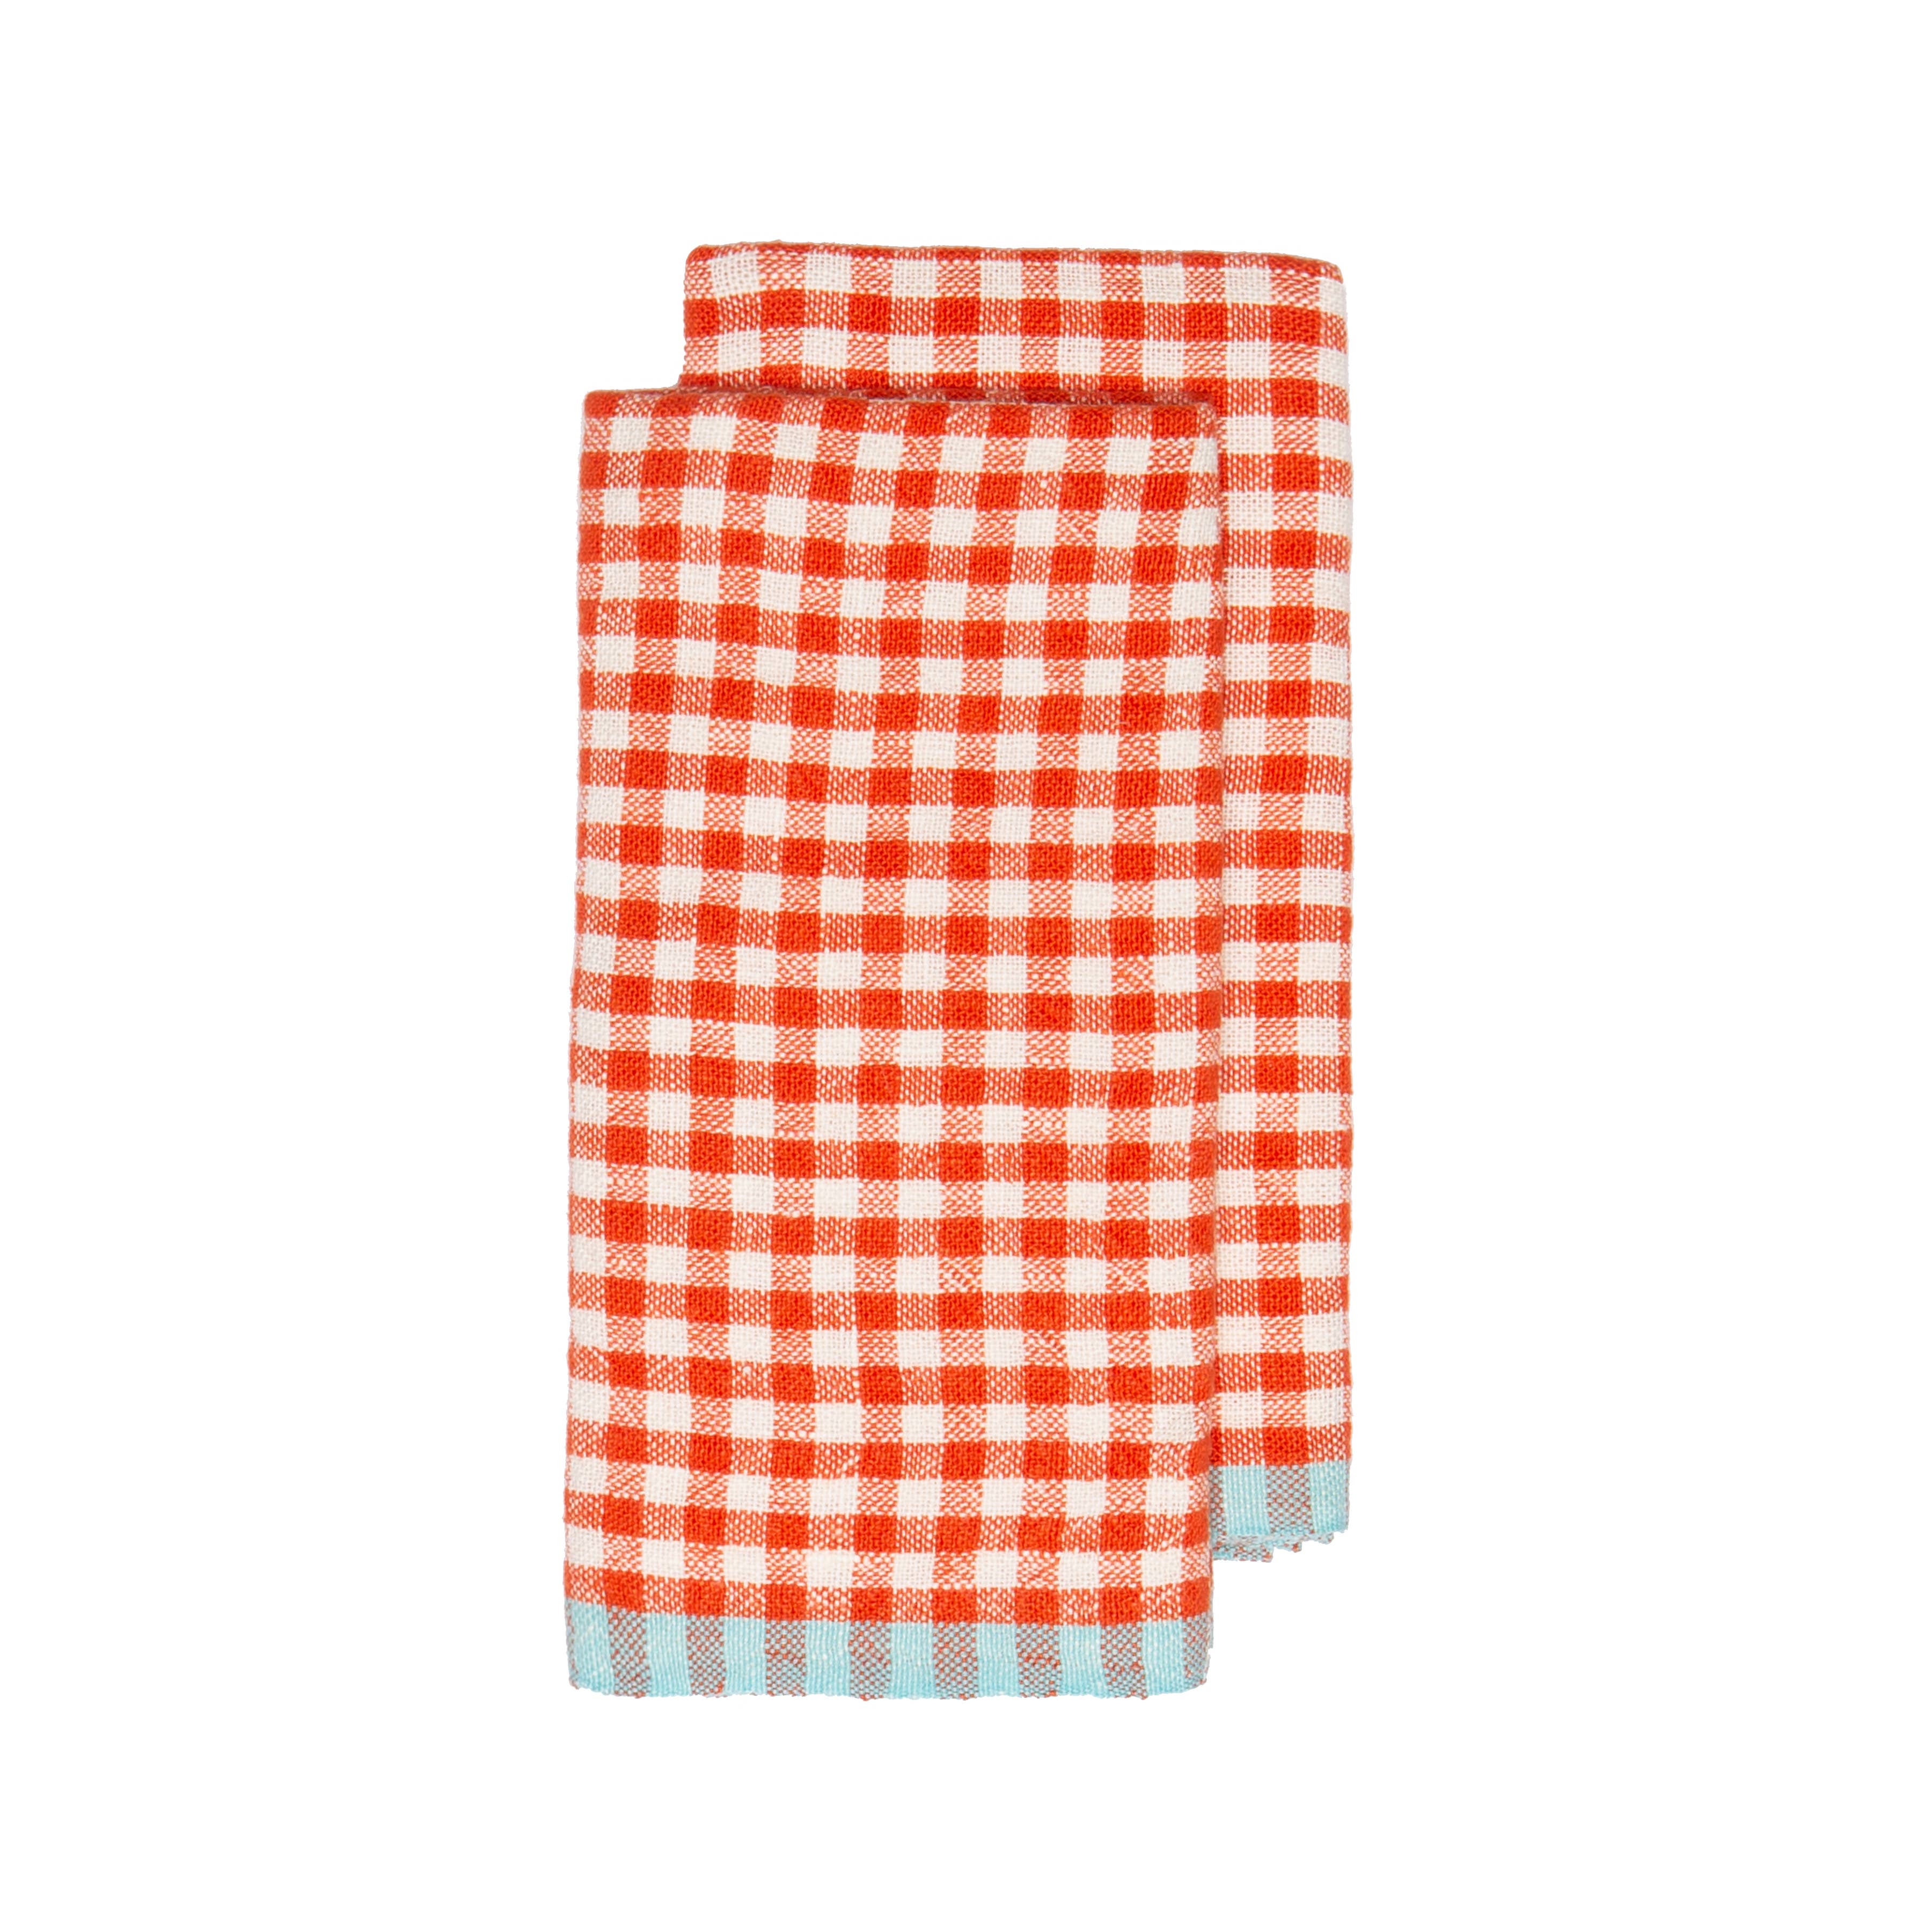 Two-Tone Gingham Orange/Aqua Towels 20x30 - Set of 2